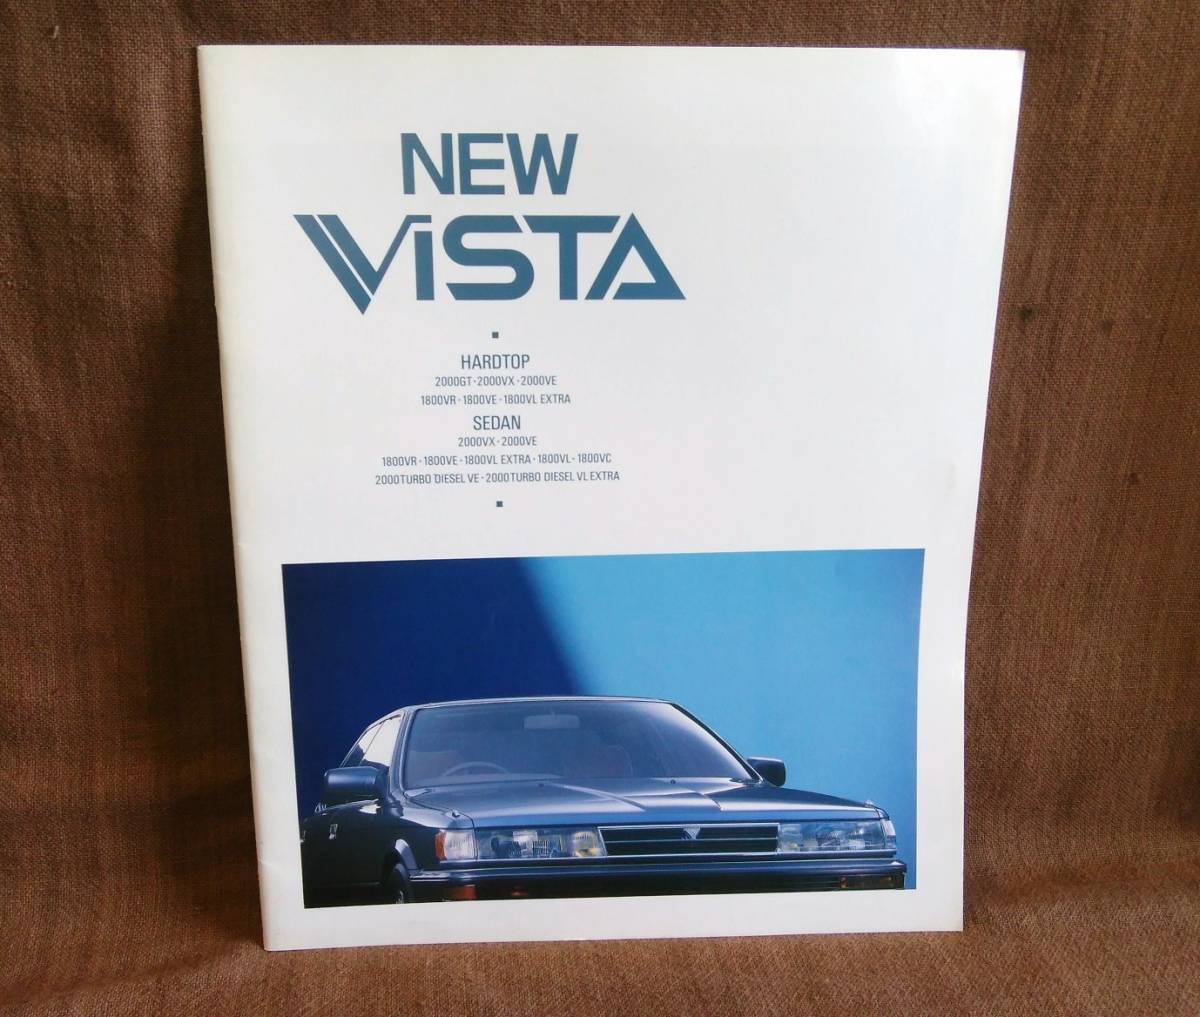  подлинная вещь TOYOTA Toyota VISTA Vista седан жесткий верх SV21 SV20 CV20 каталог Showa 62 год 4 месяц все цвет все 33 страница 